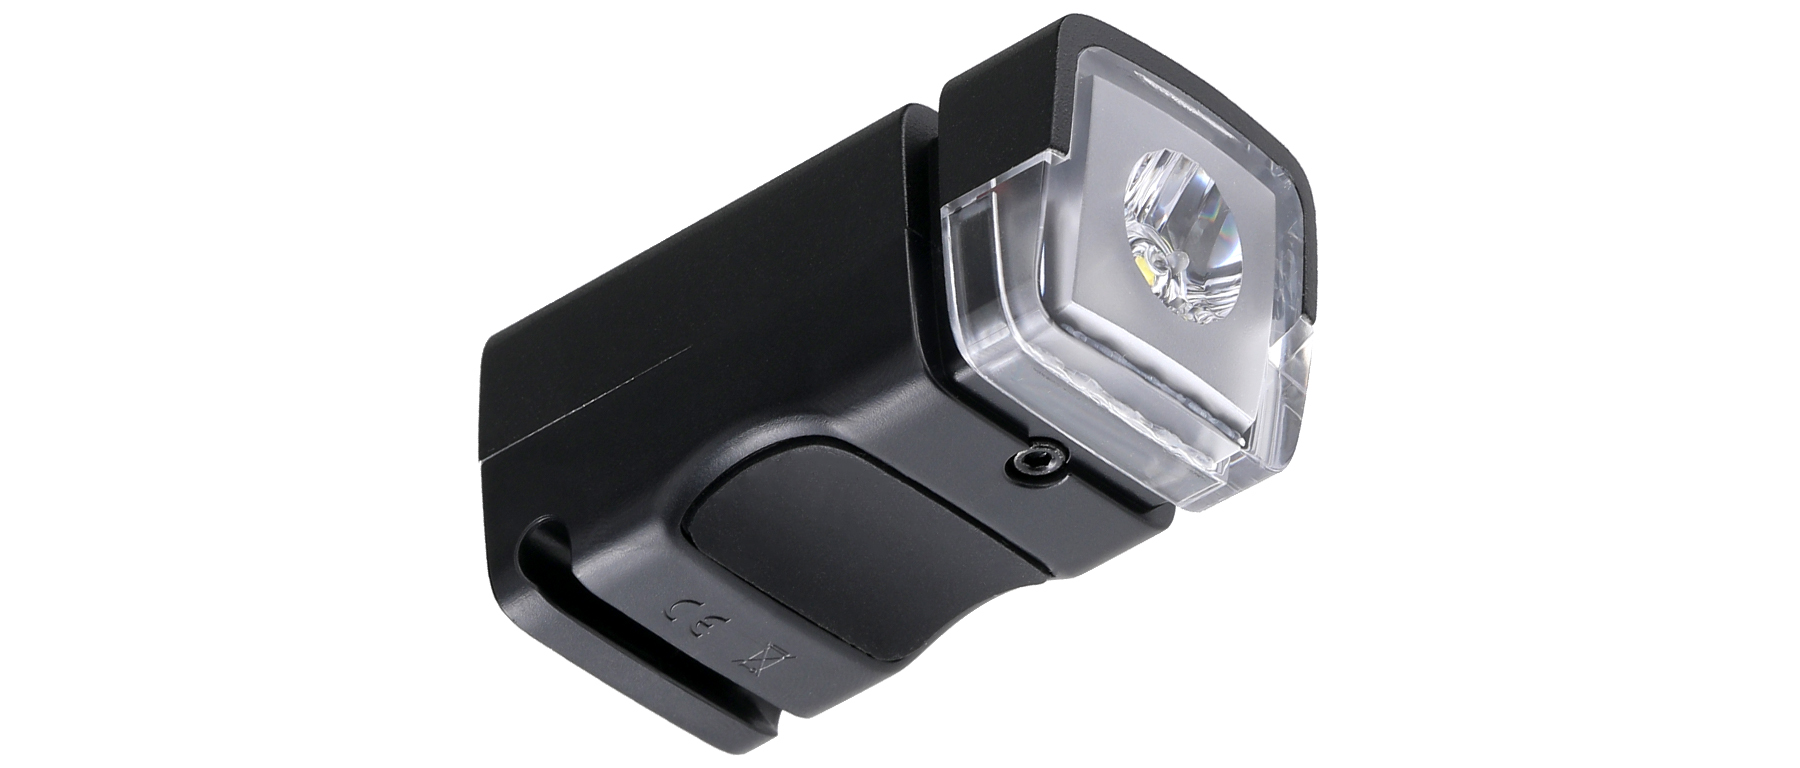 Specialized Flash 500 Headlight